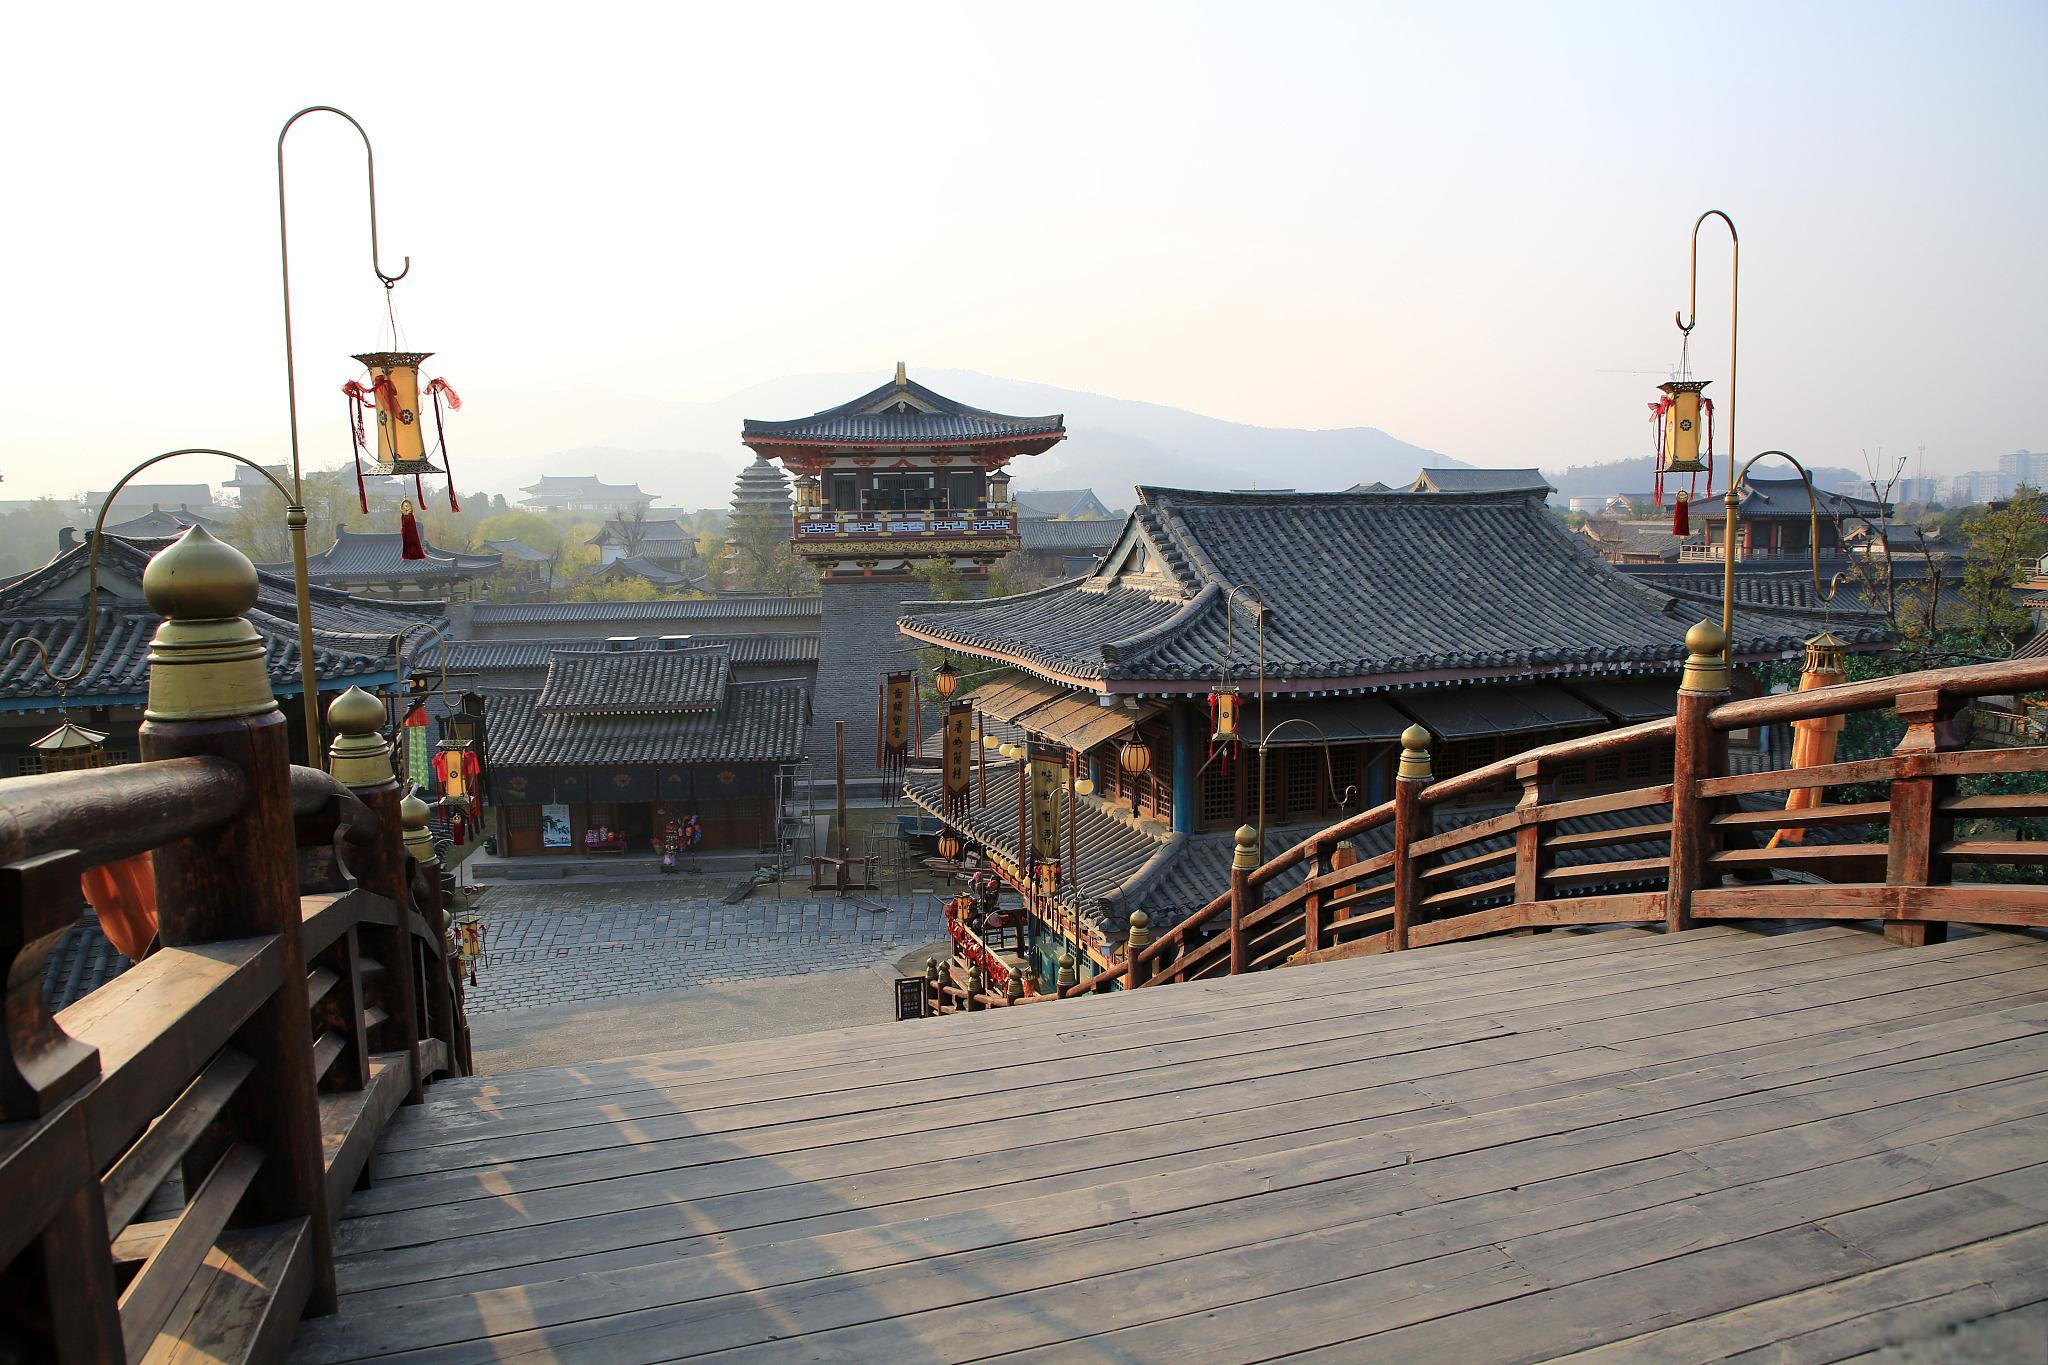 水浒城位于江苏省无锡市,是中国著名的影视拍摄基地和文化旅游景点